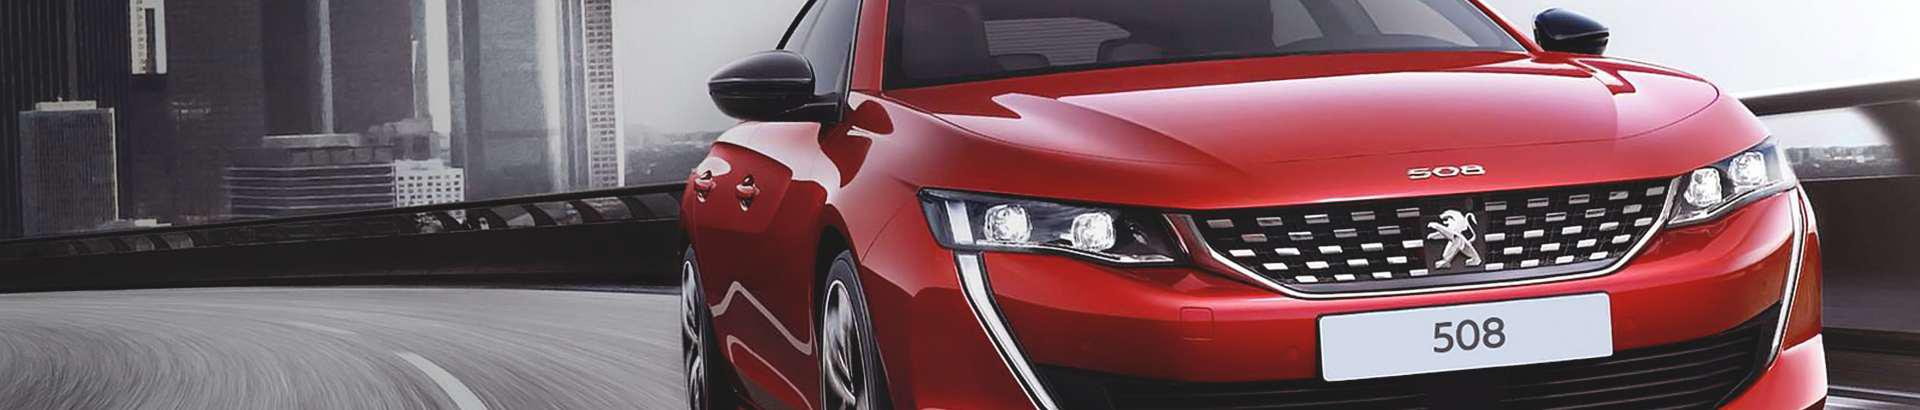 Tegeleme uute Peugeot sõidukite müügi, müügijärgse teeninduse ning kasutatud sõidukite müügiga.